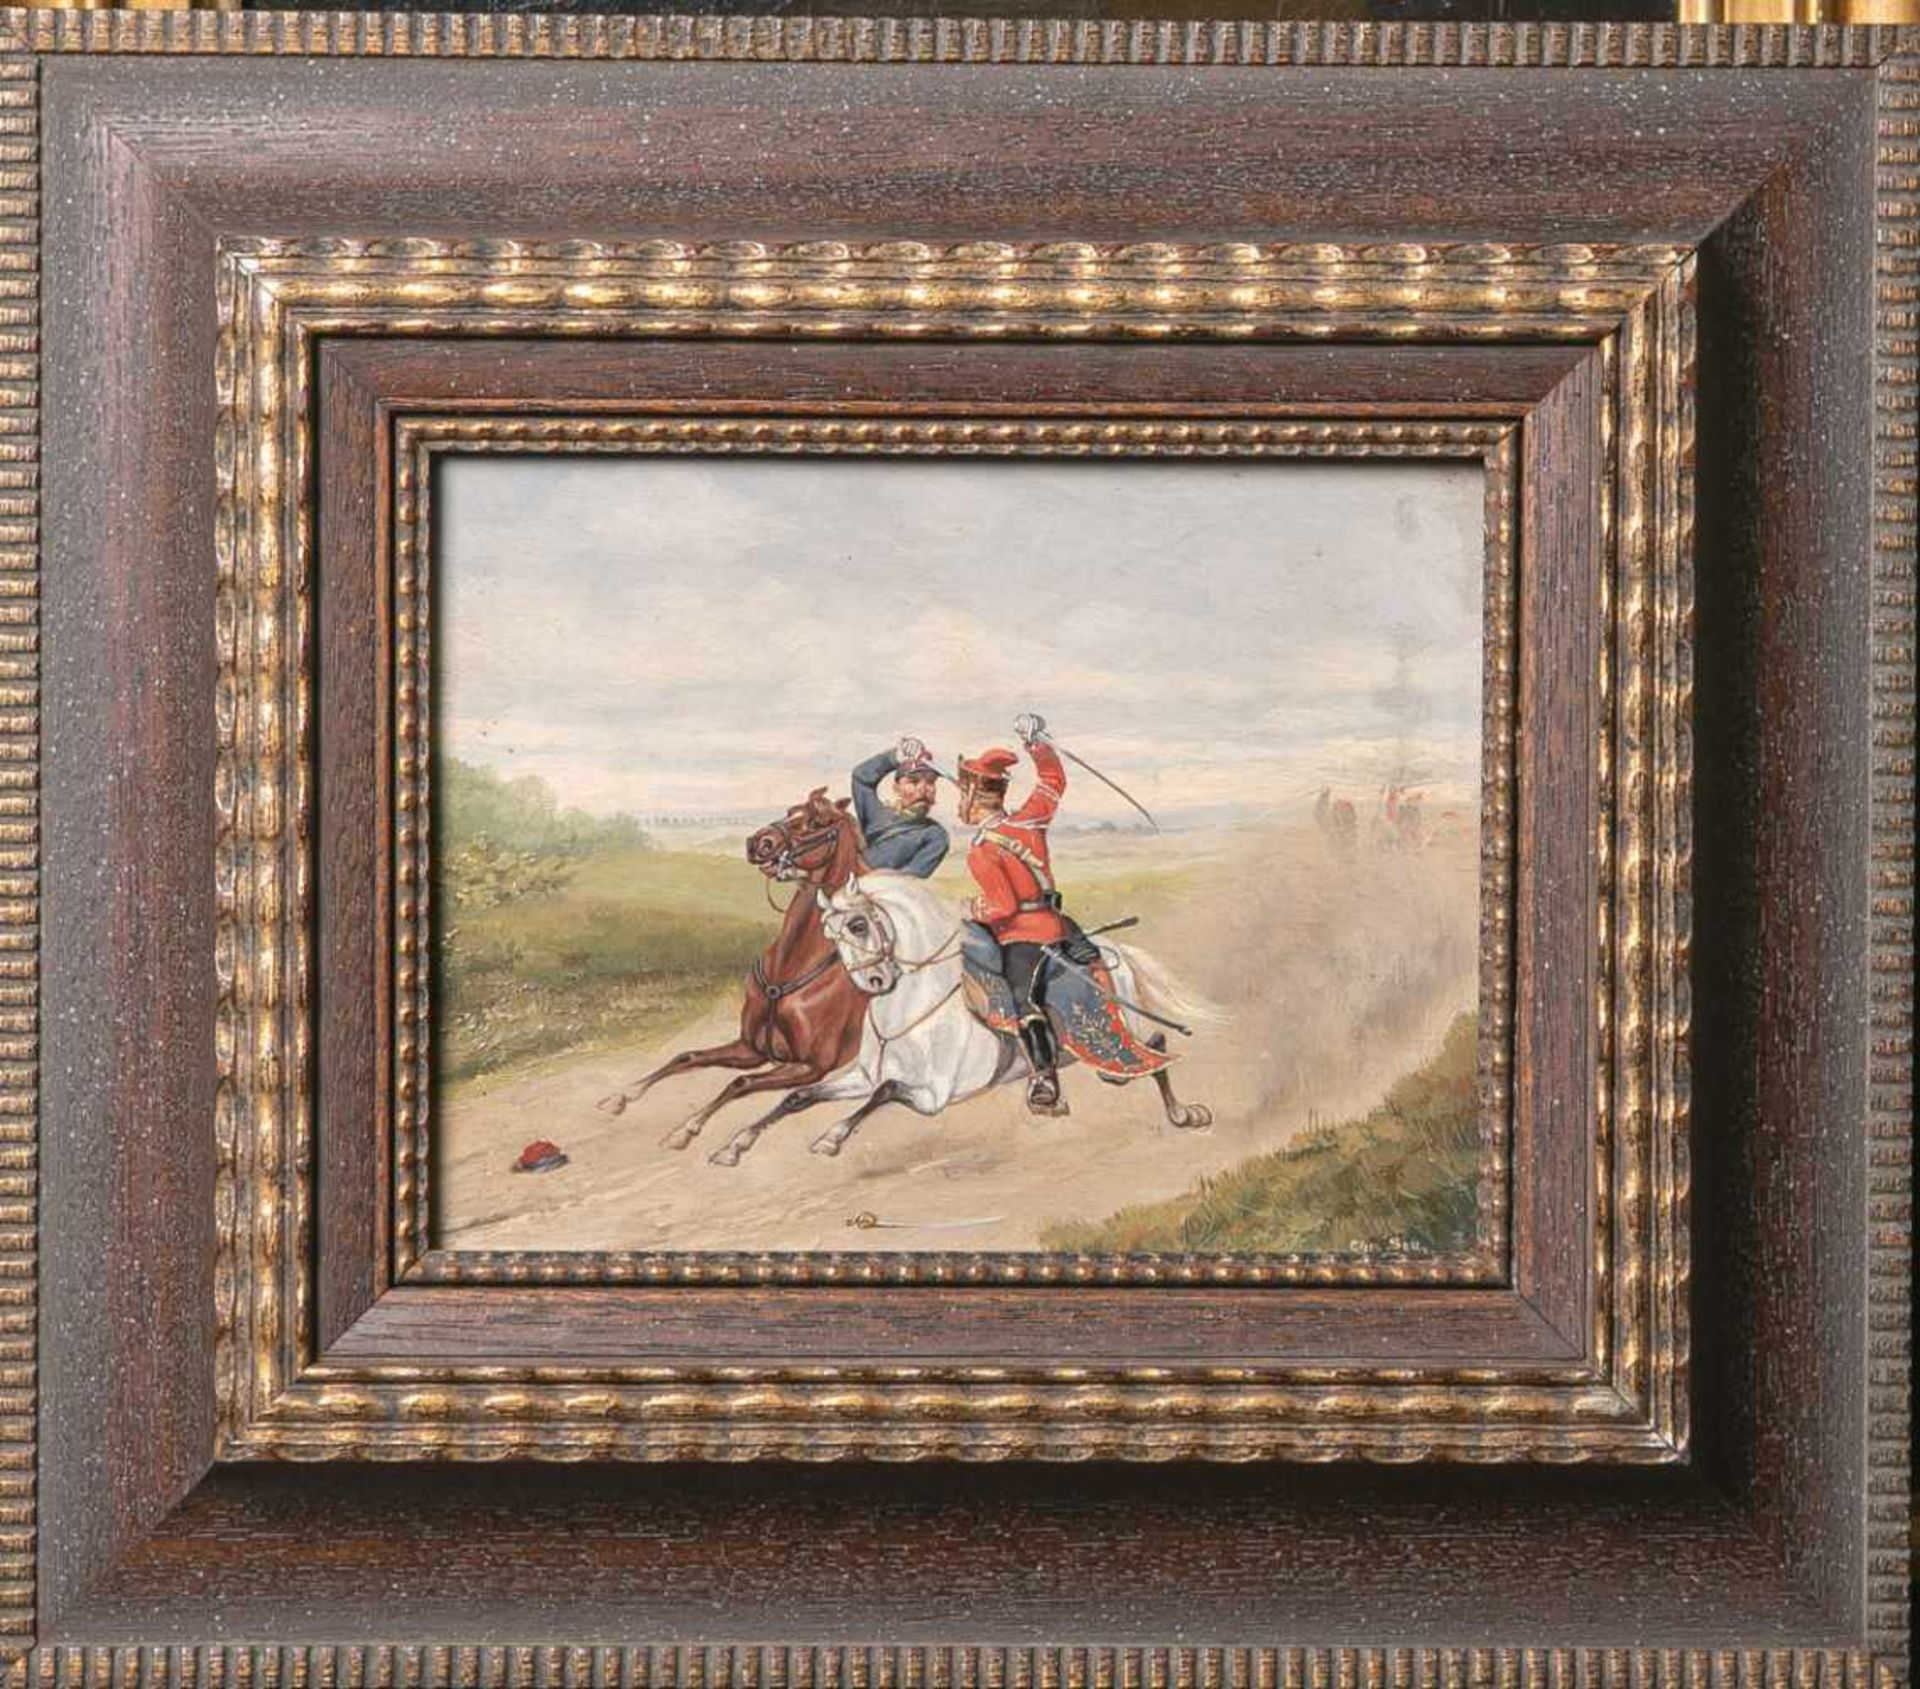 Sell, Christian (Altona 1831-1883 Düsseldorf), Darstellung von zwei berittenen Kämpfern im